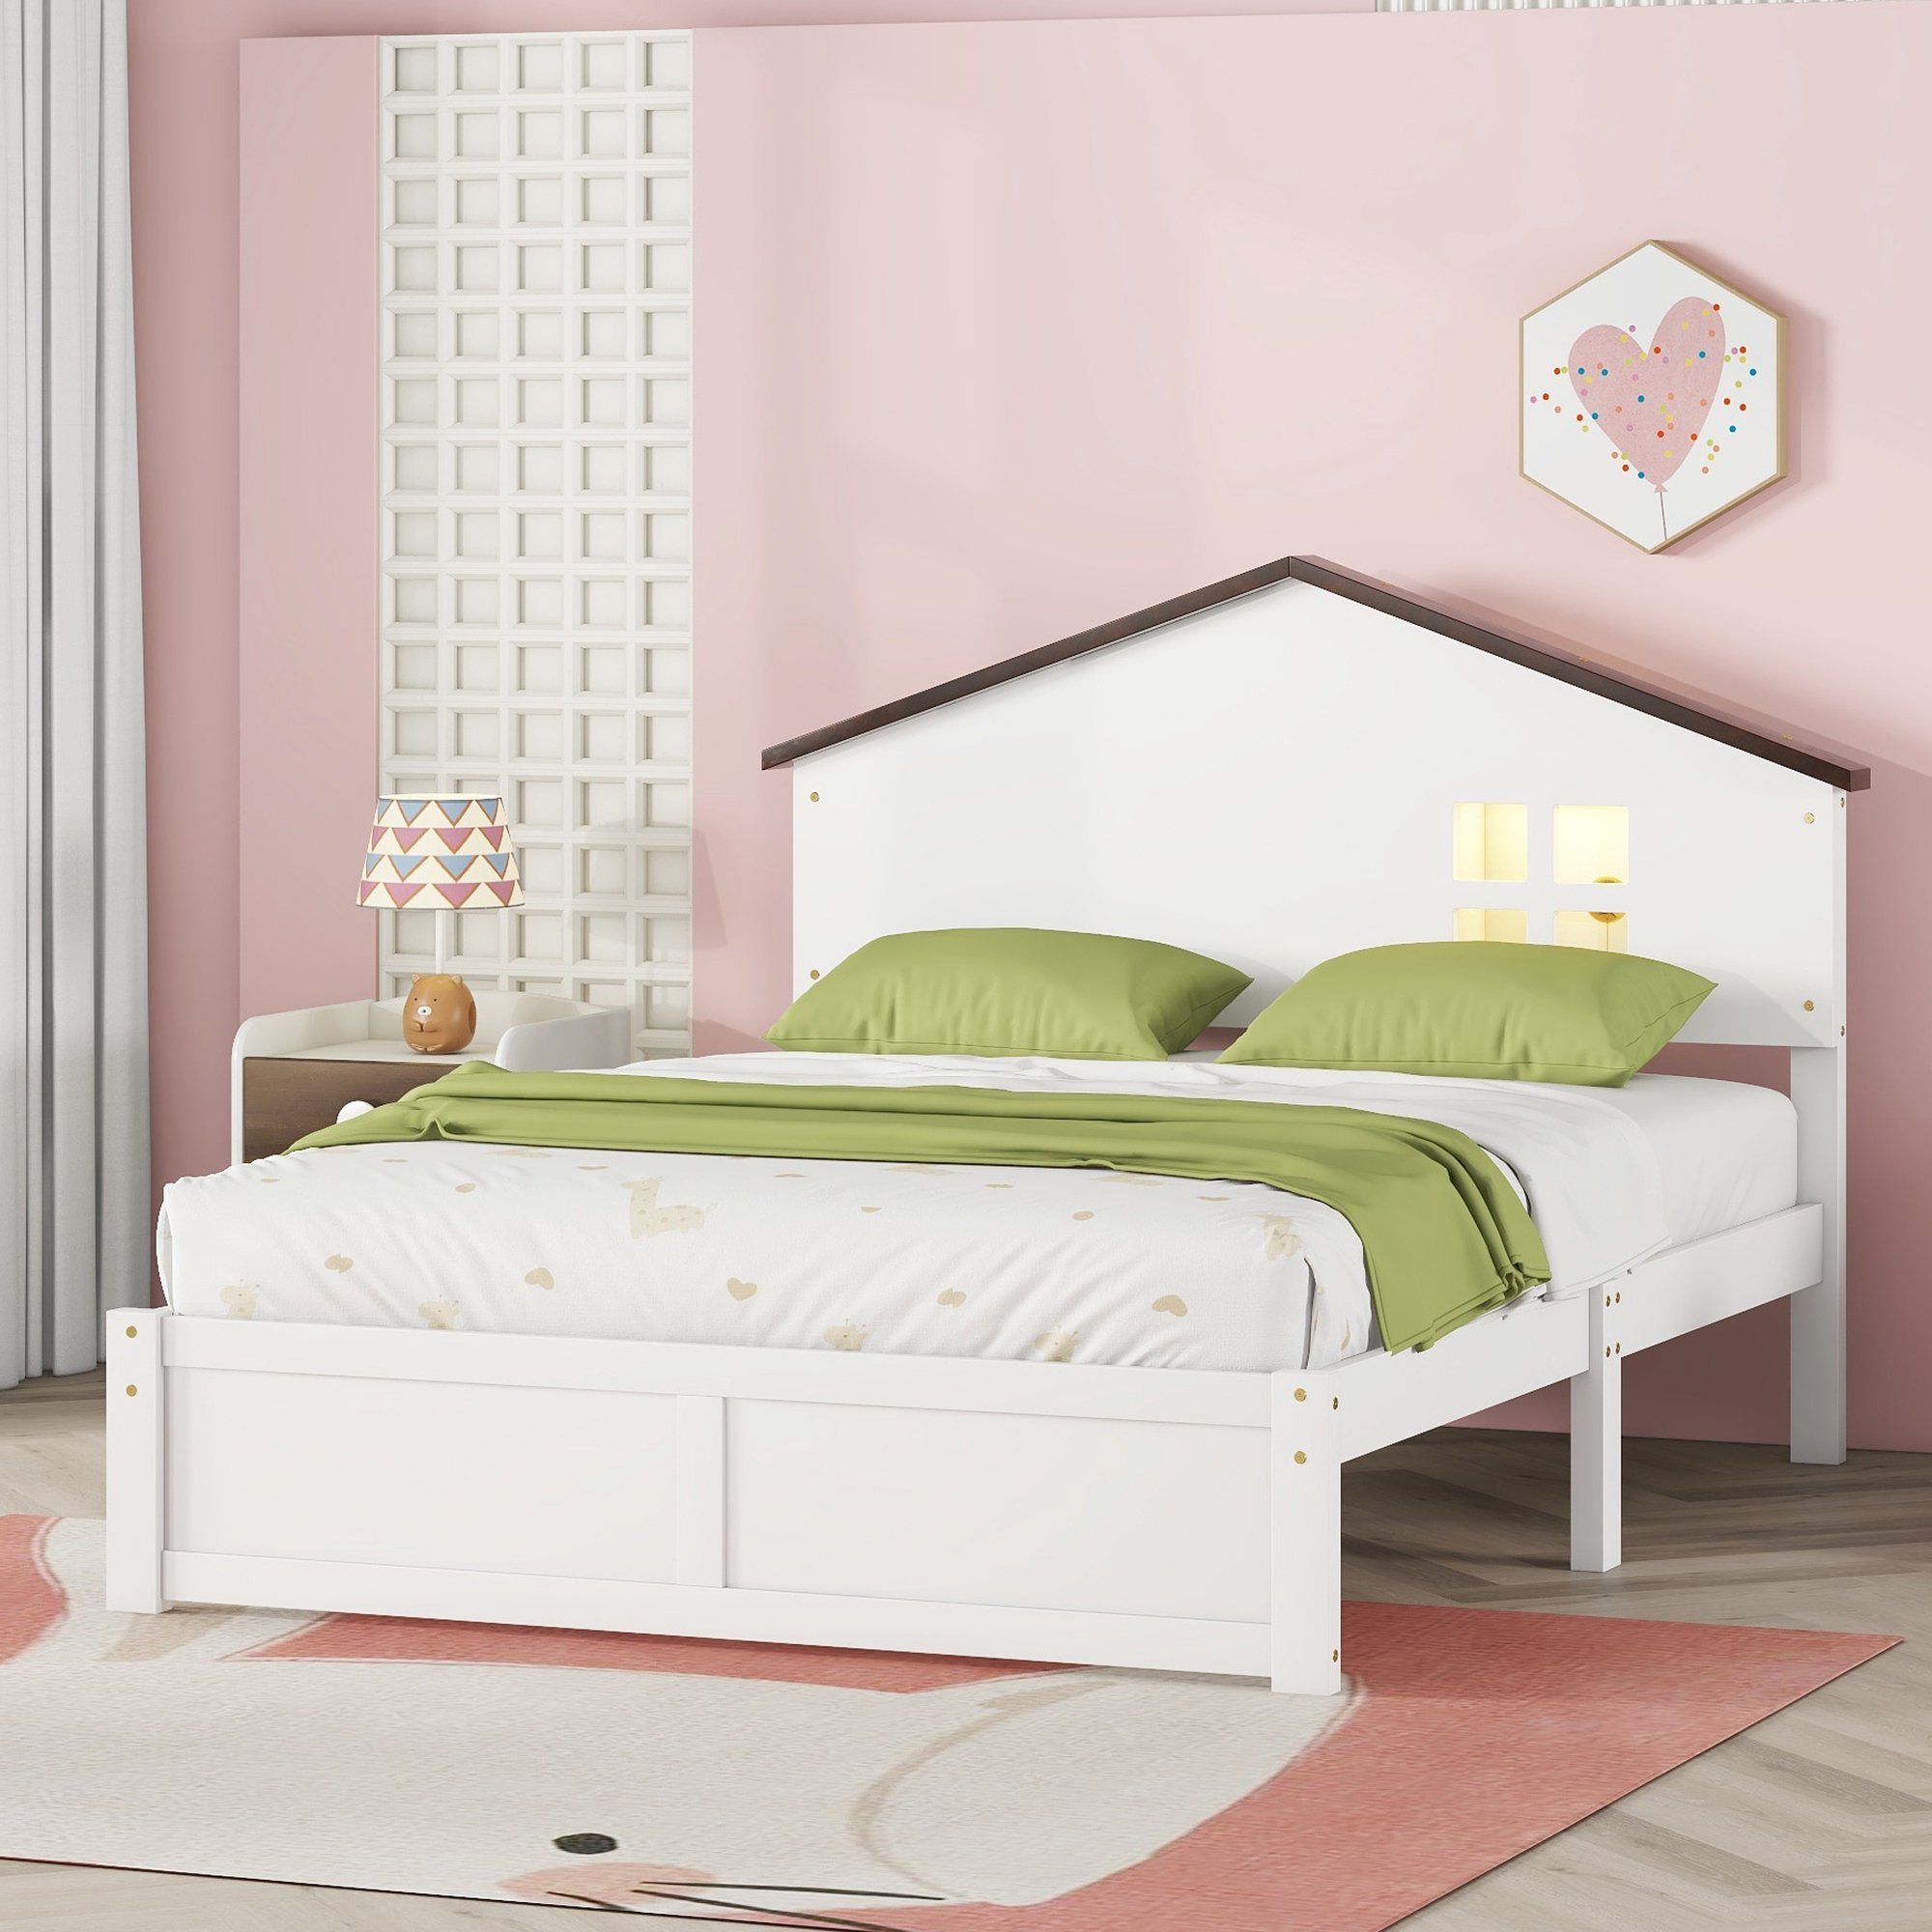 OKWISH Kinderbett hausförmiges, flaches Bett, kleine Fensterdekoration, LED-Nachtlicht (140*200cm), ohne Matratze